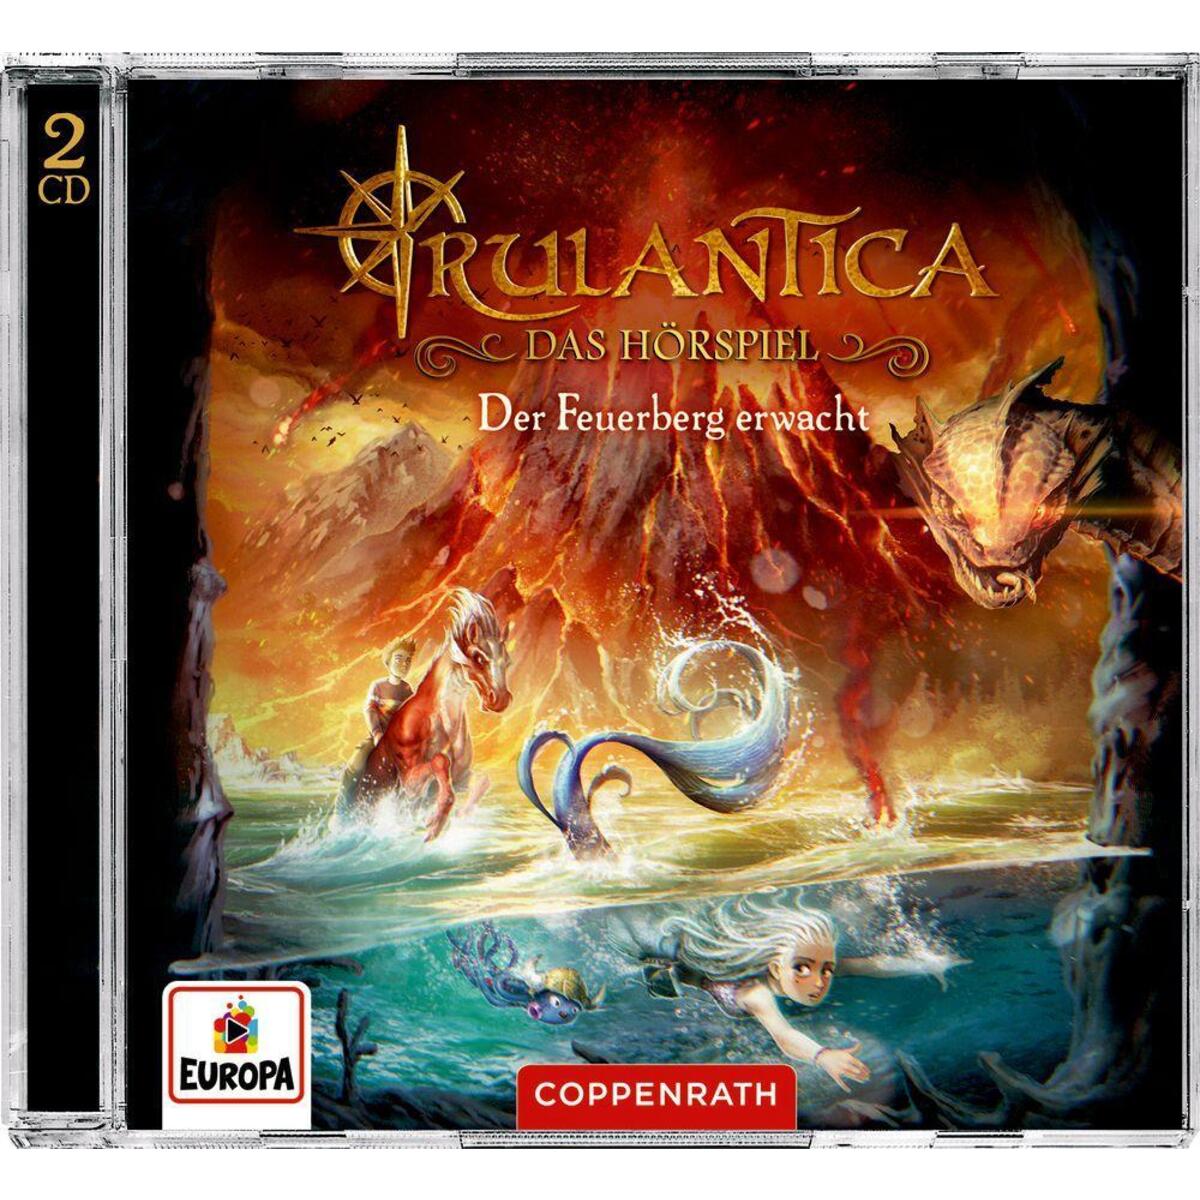 CD Hörspiel: Rulantica Bd. 3 (2 CDs) von Coppenrath F